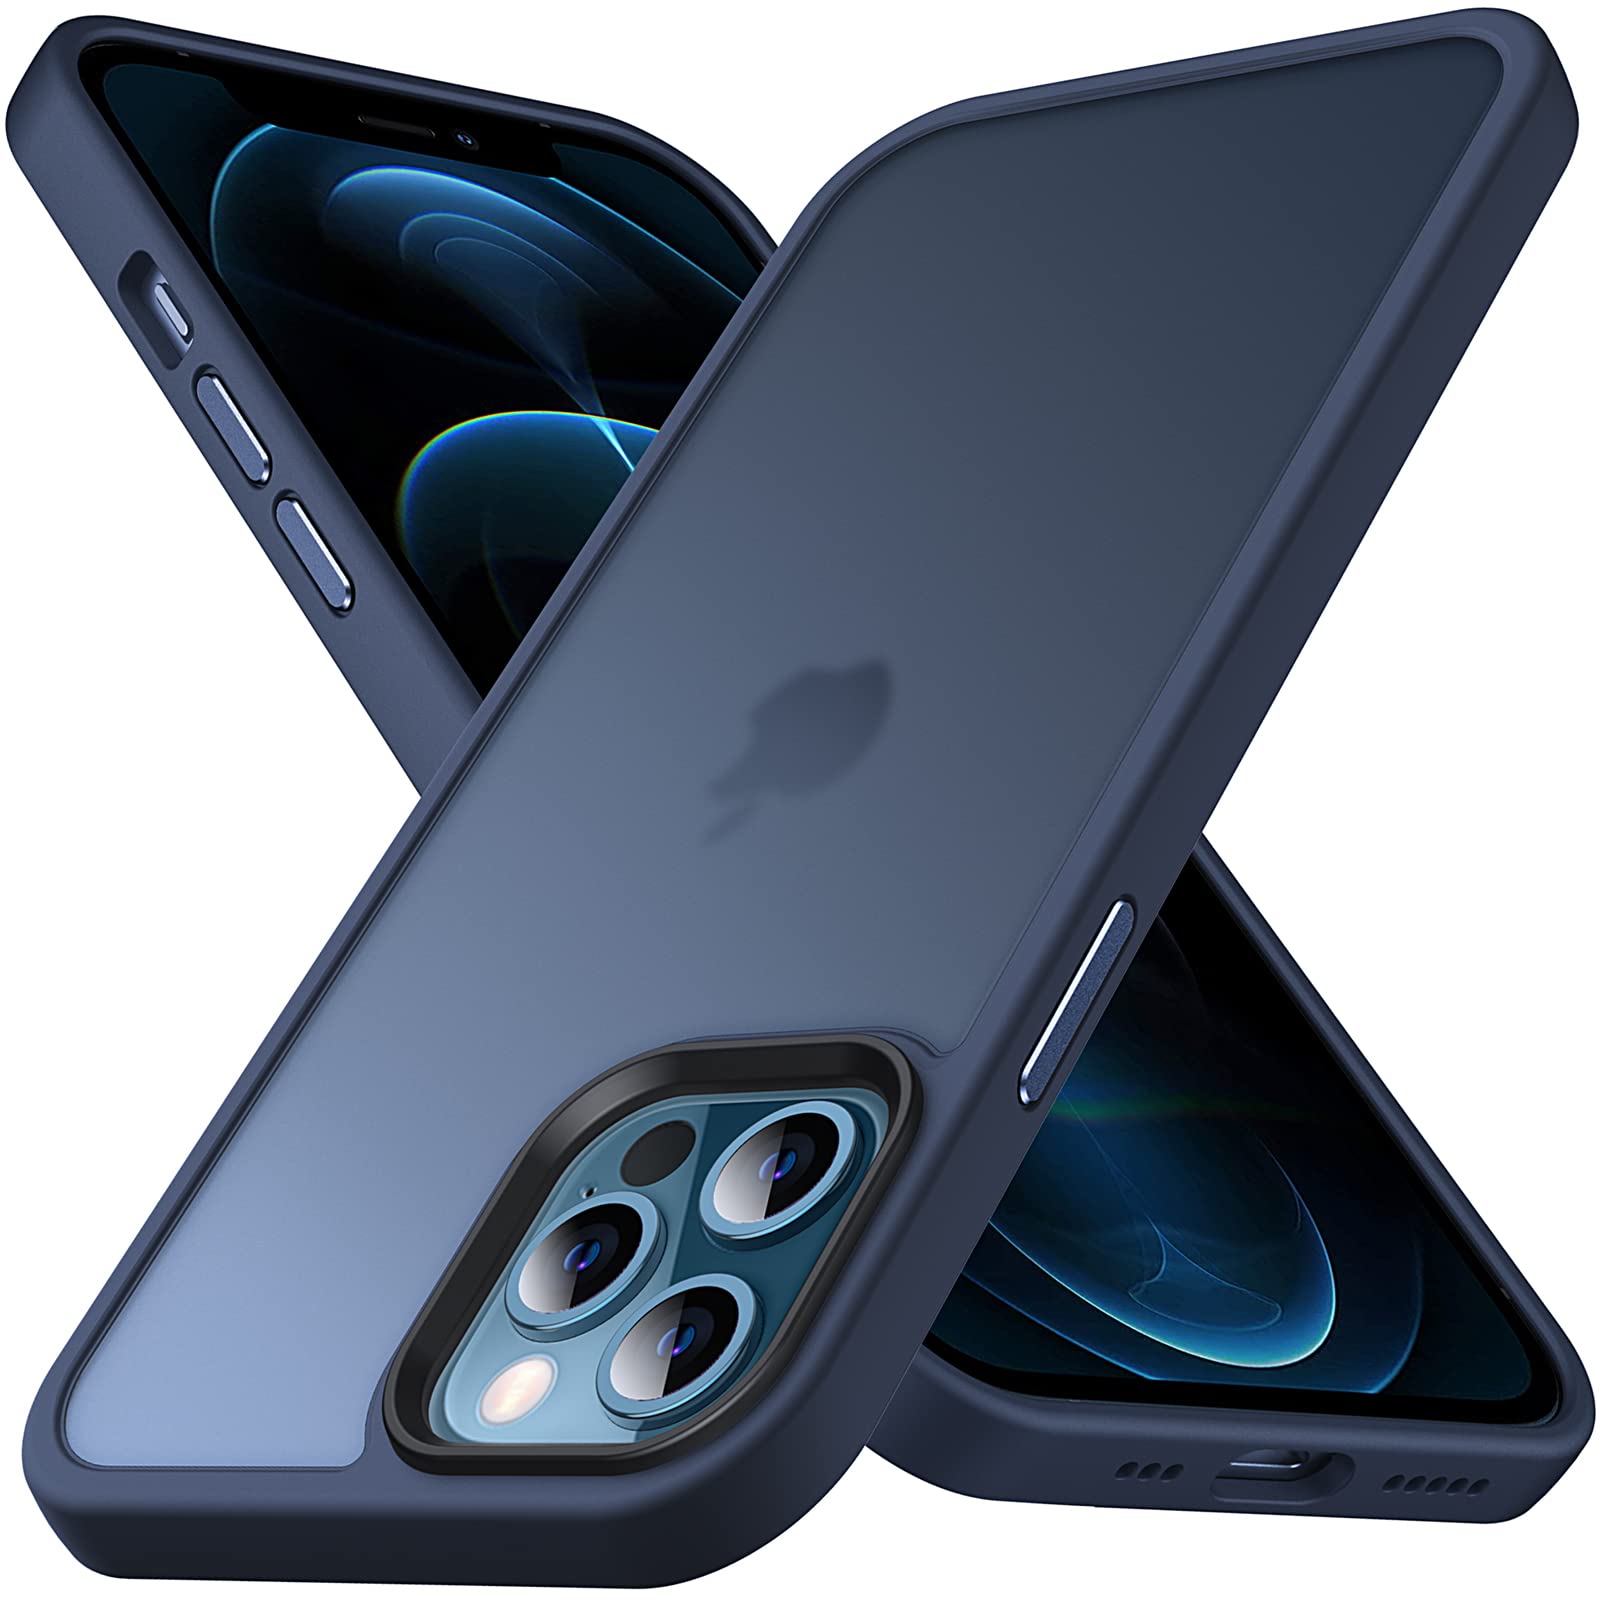 Anqrp iPhone12 Pro Max 用 ケース 半透明 耐衝撃 滑り止め 米軍MIL規格 指紋防止 マット感ケース ストラップホール付き ワイヤレス充電対応 スマホケース アイフォン12 Pro Max カバー 6.7インチ マットブルー